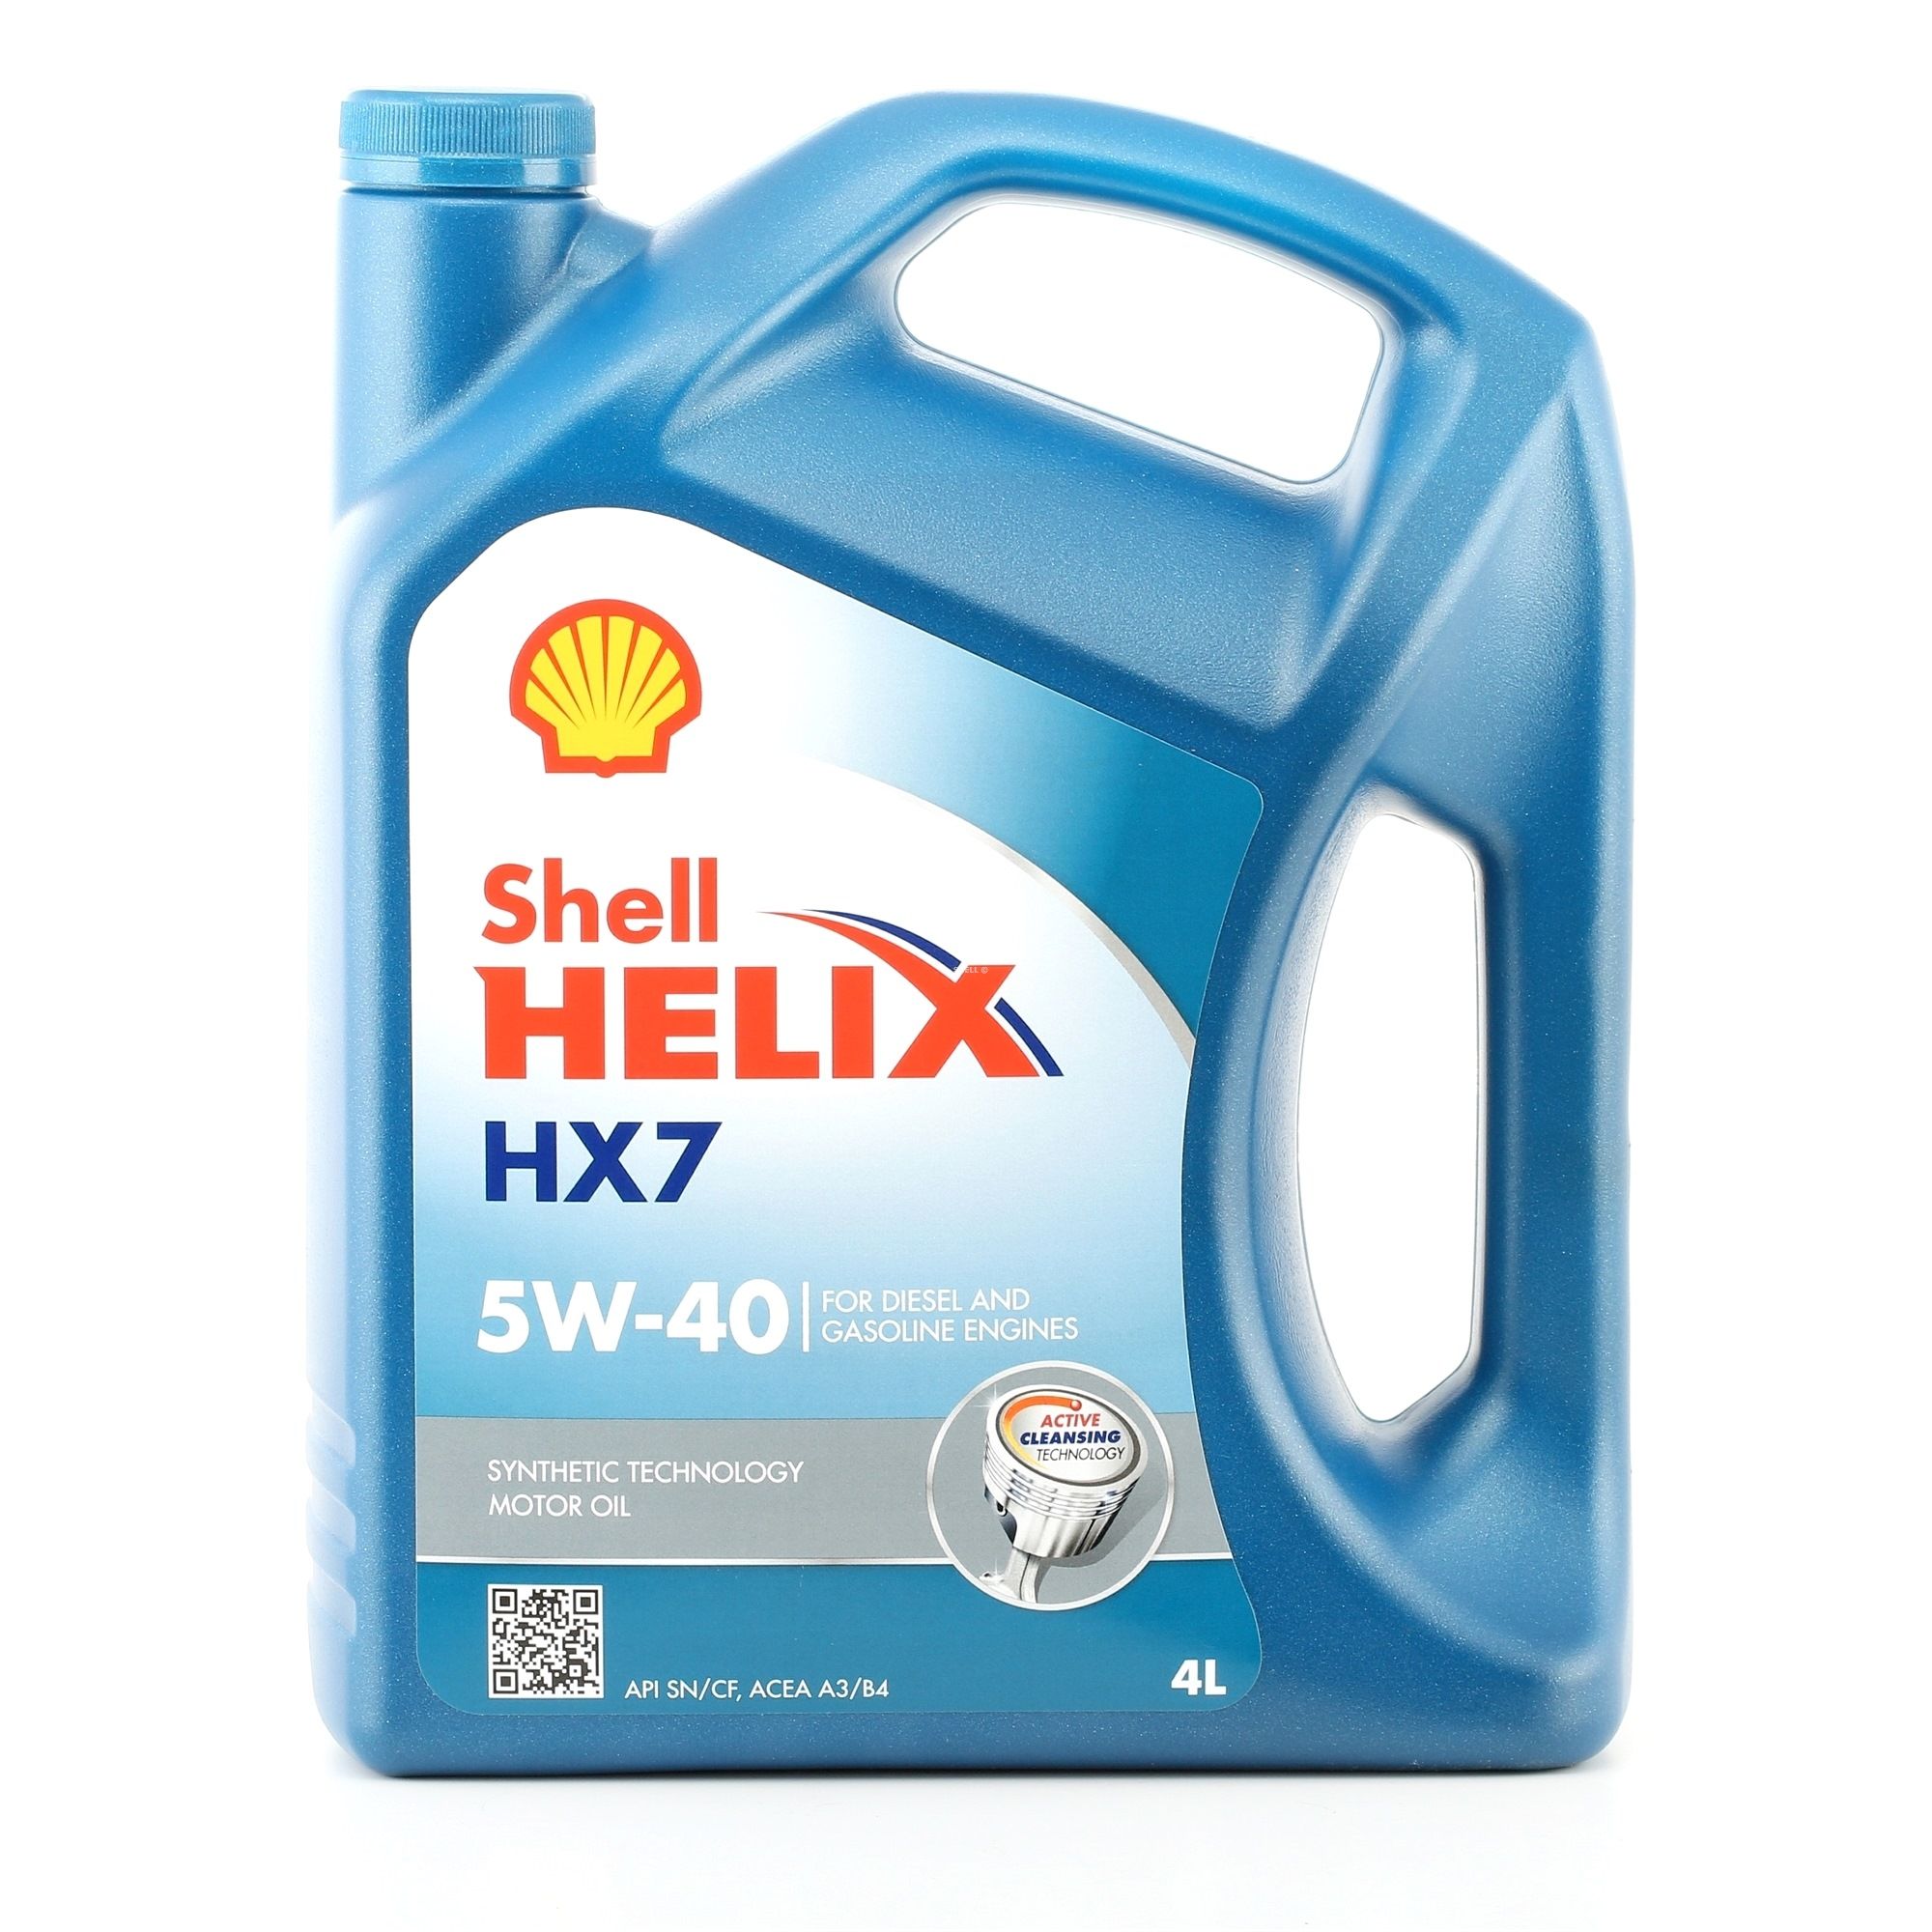 Comprare 5W40 SHELL Helix, HX7 5W-40, 4l Olio motore 550046284 poco costoso